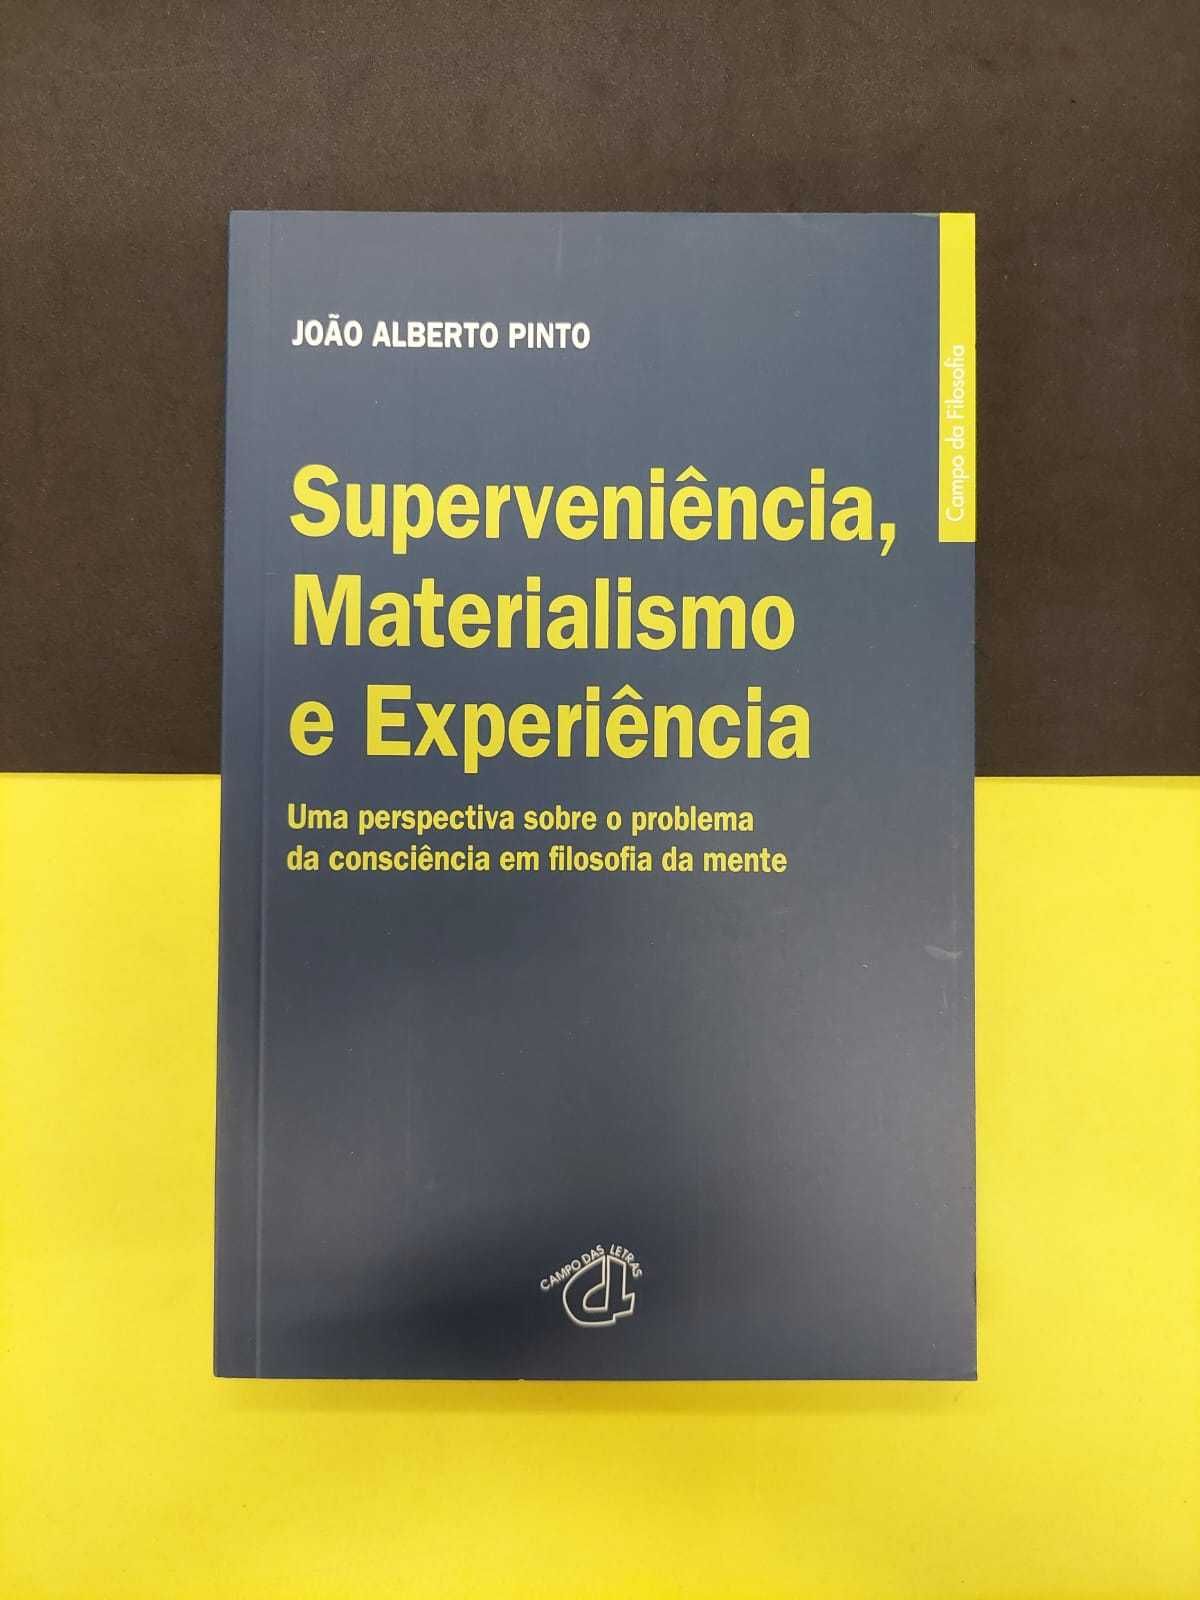 João Alberto Pinto - Superveniência, Materialismo e Experiência